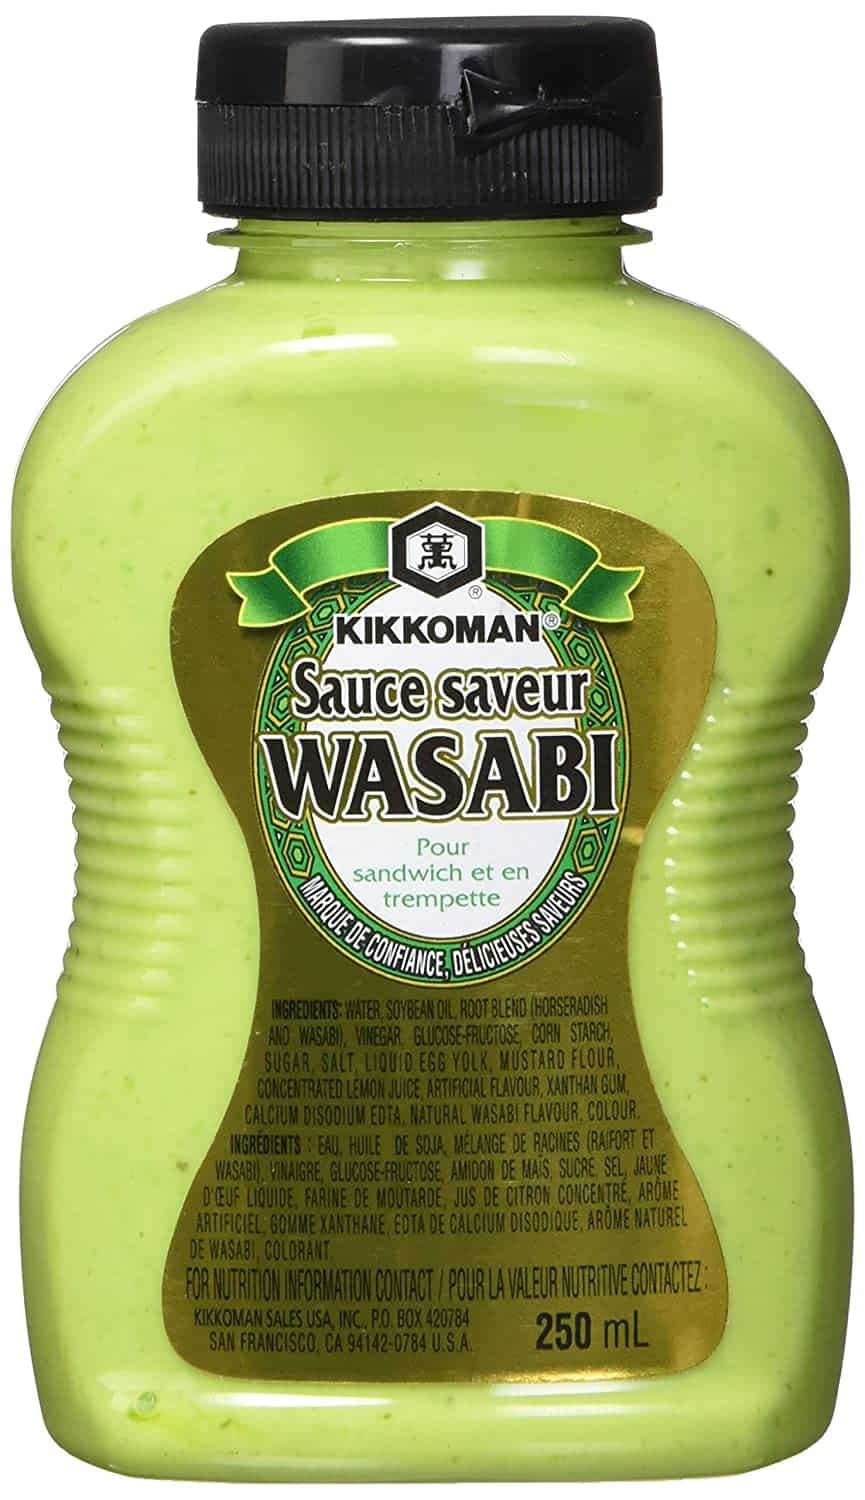 saws wasabi kikkoman